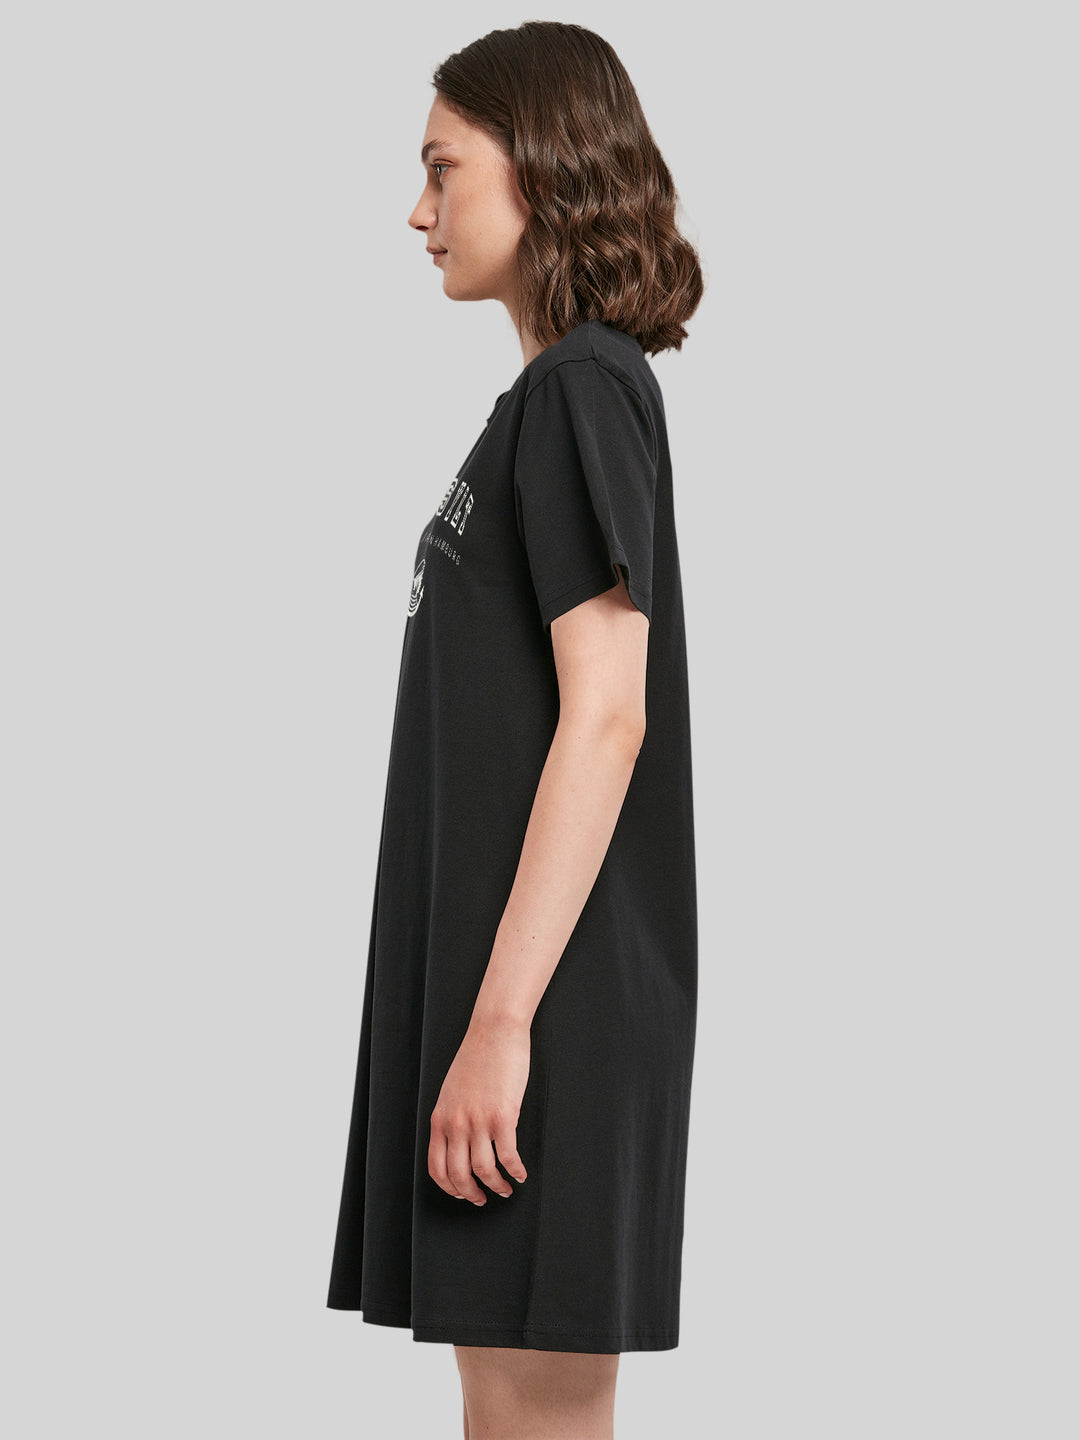 WIETE | Damen T-Shirt Kleid Go Sylt